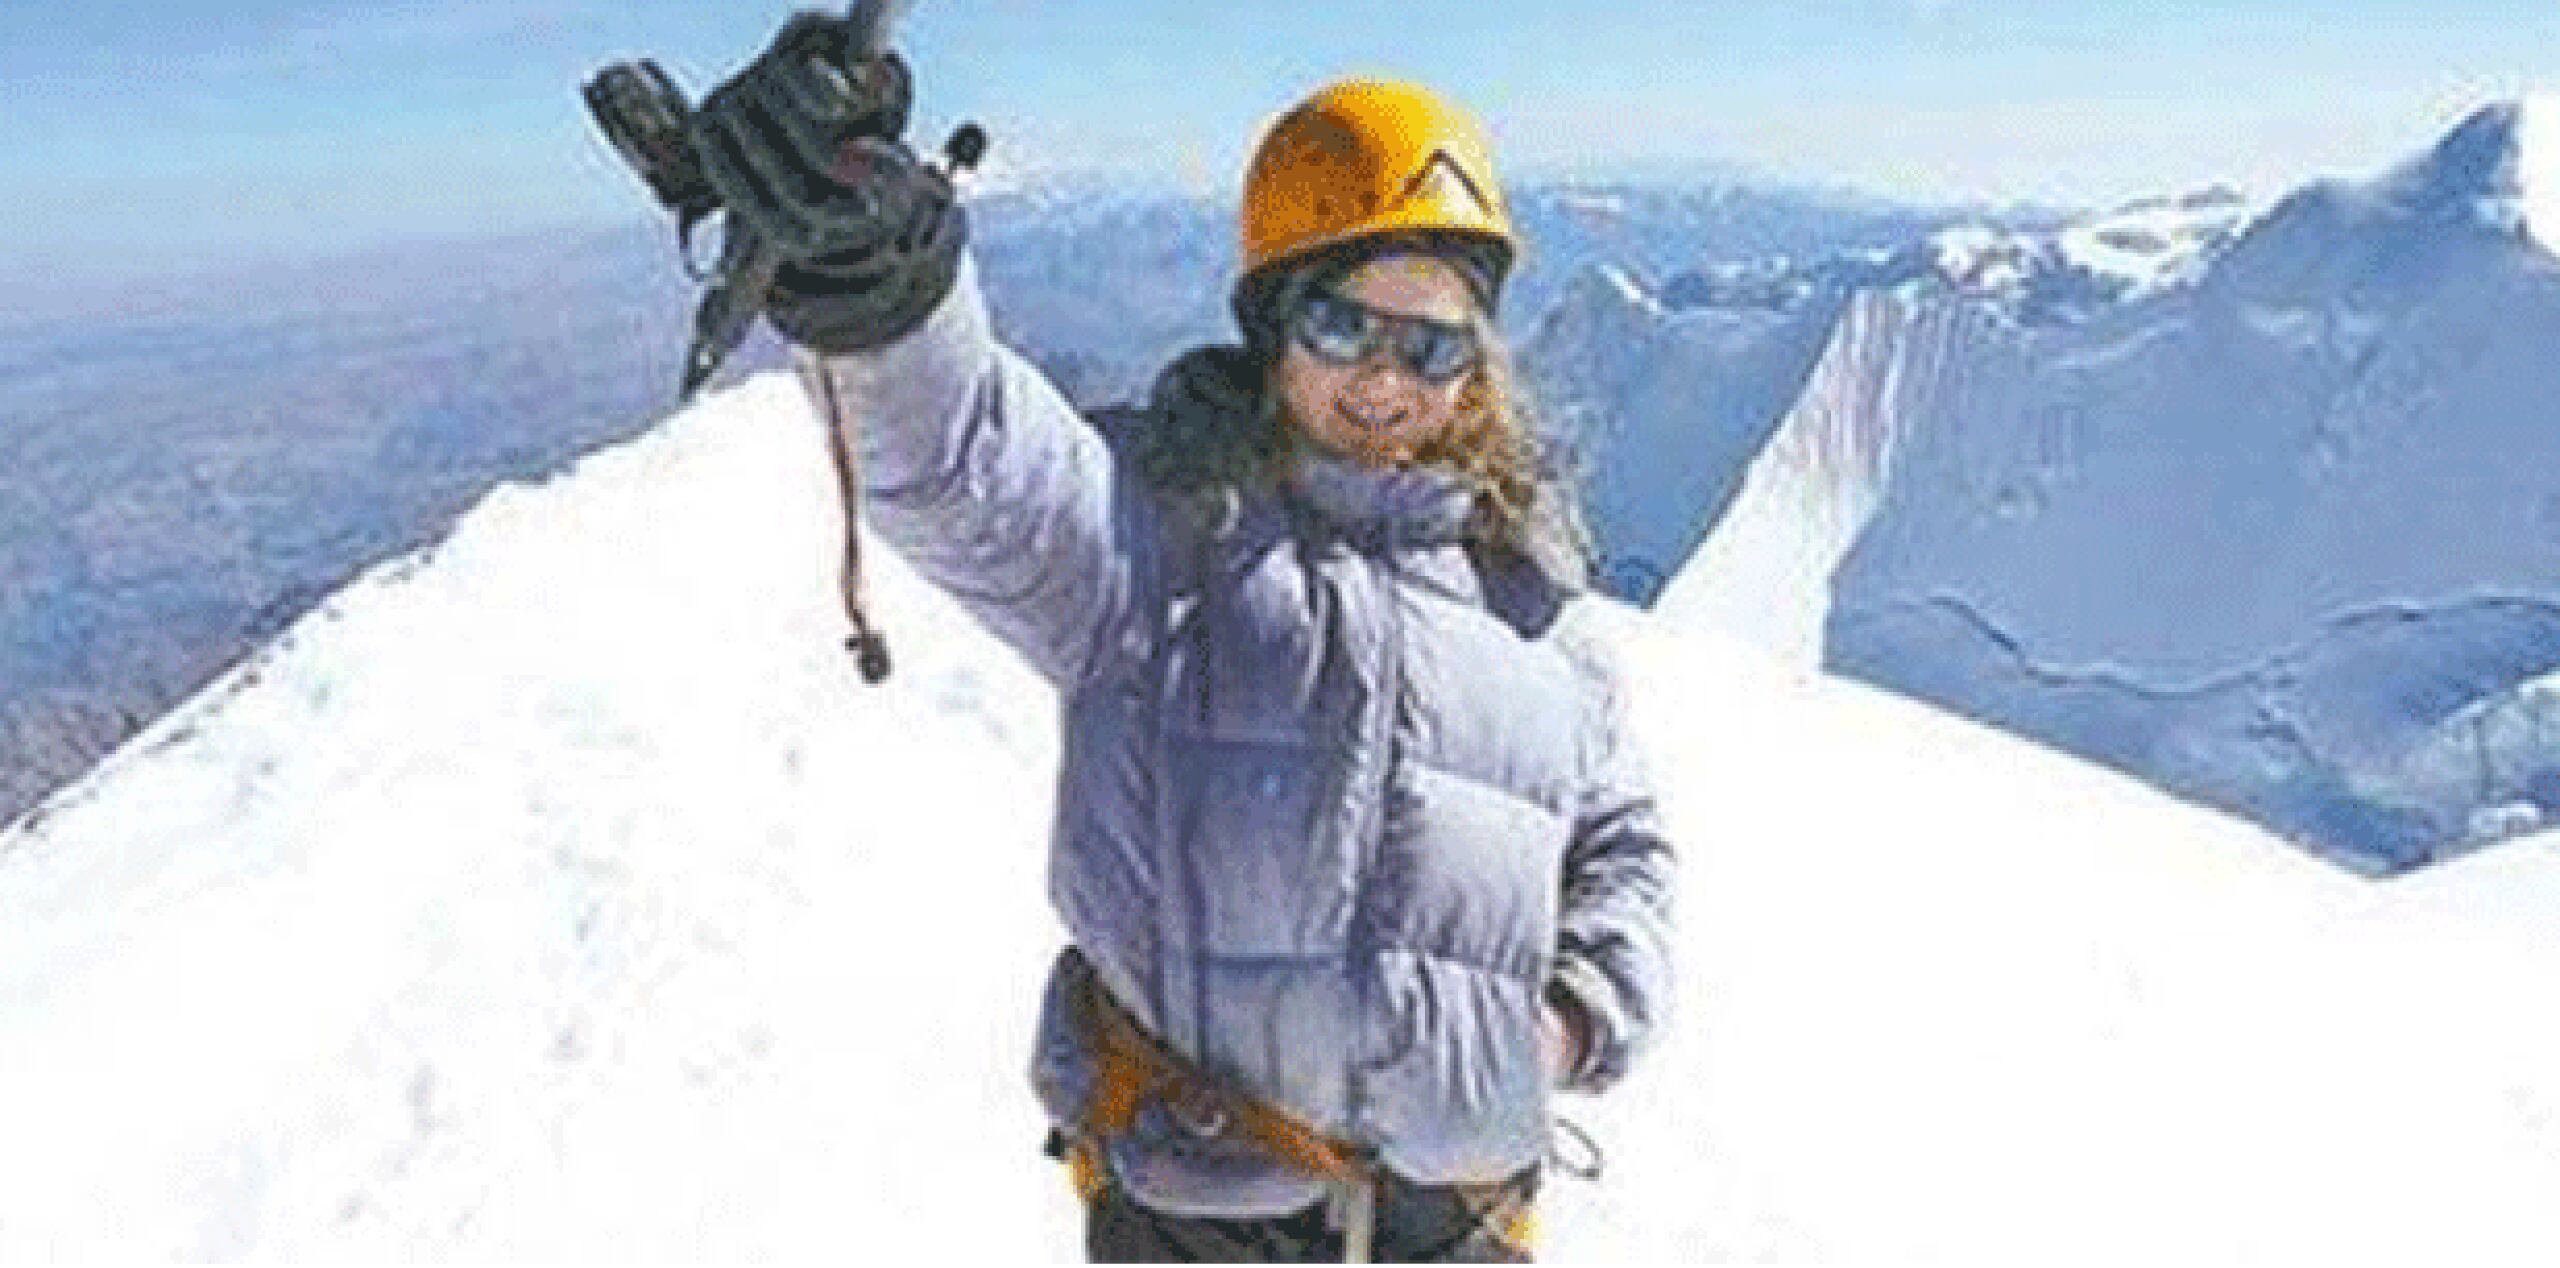 La menor dijo que escaló otros nevados que circundan a La Paz entre ellos el Huayna Potosí, de 6,088 metros de altitud y favorito de escaladores principiantes. (Periódico a.m. ?@periodicoam)